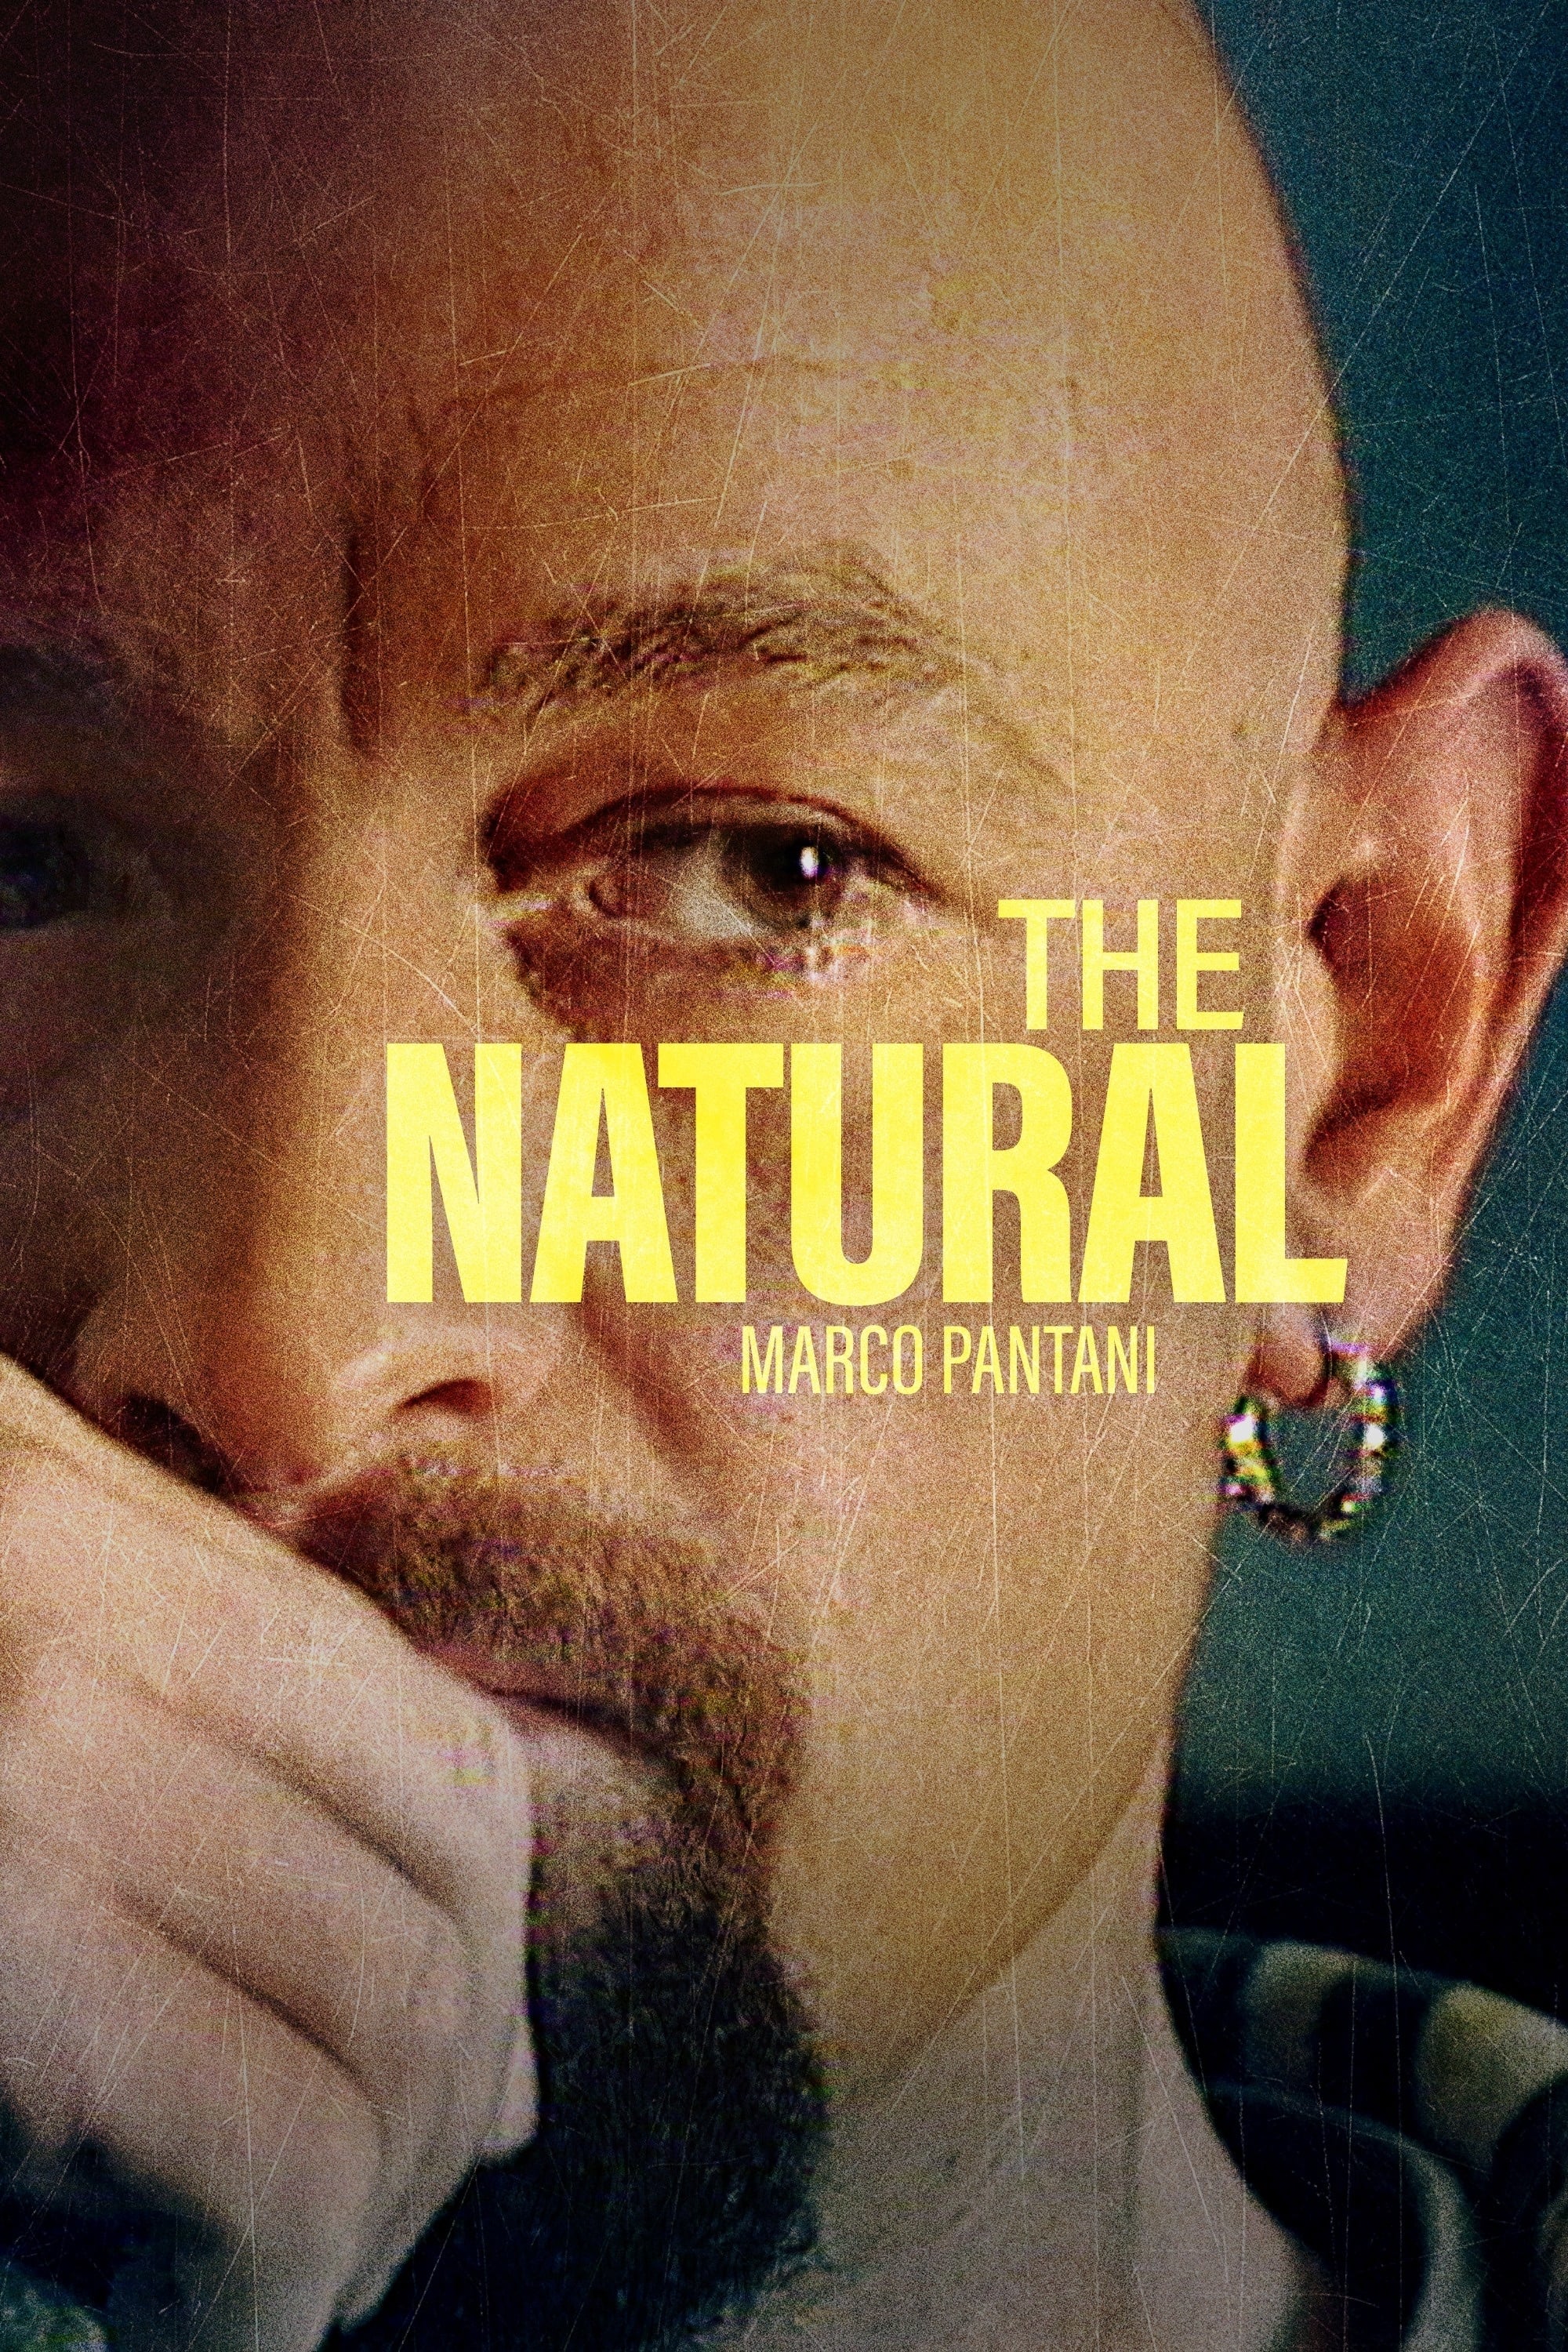 The Natural: Marco Pantani